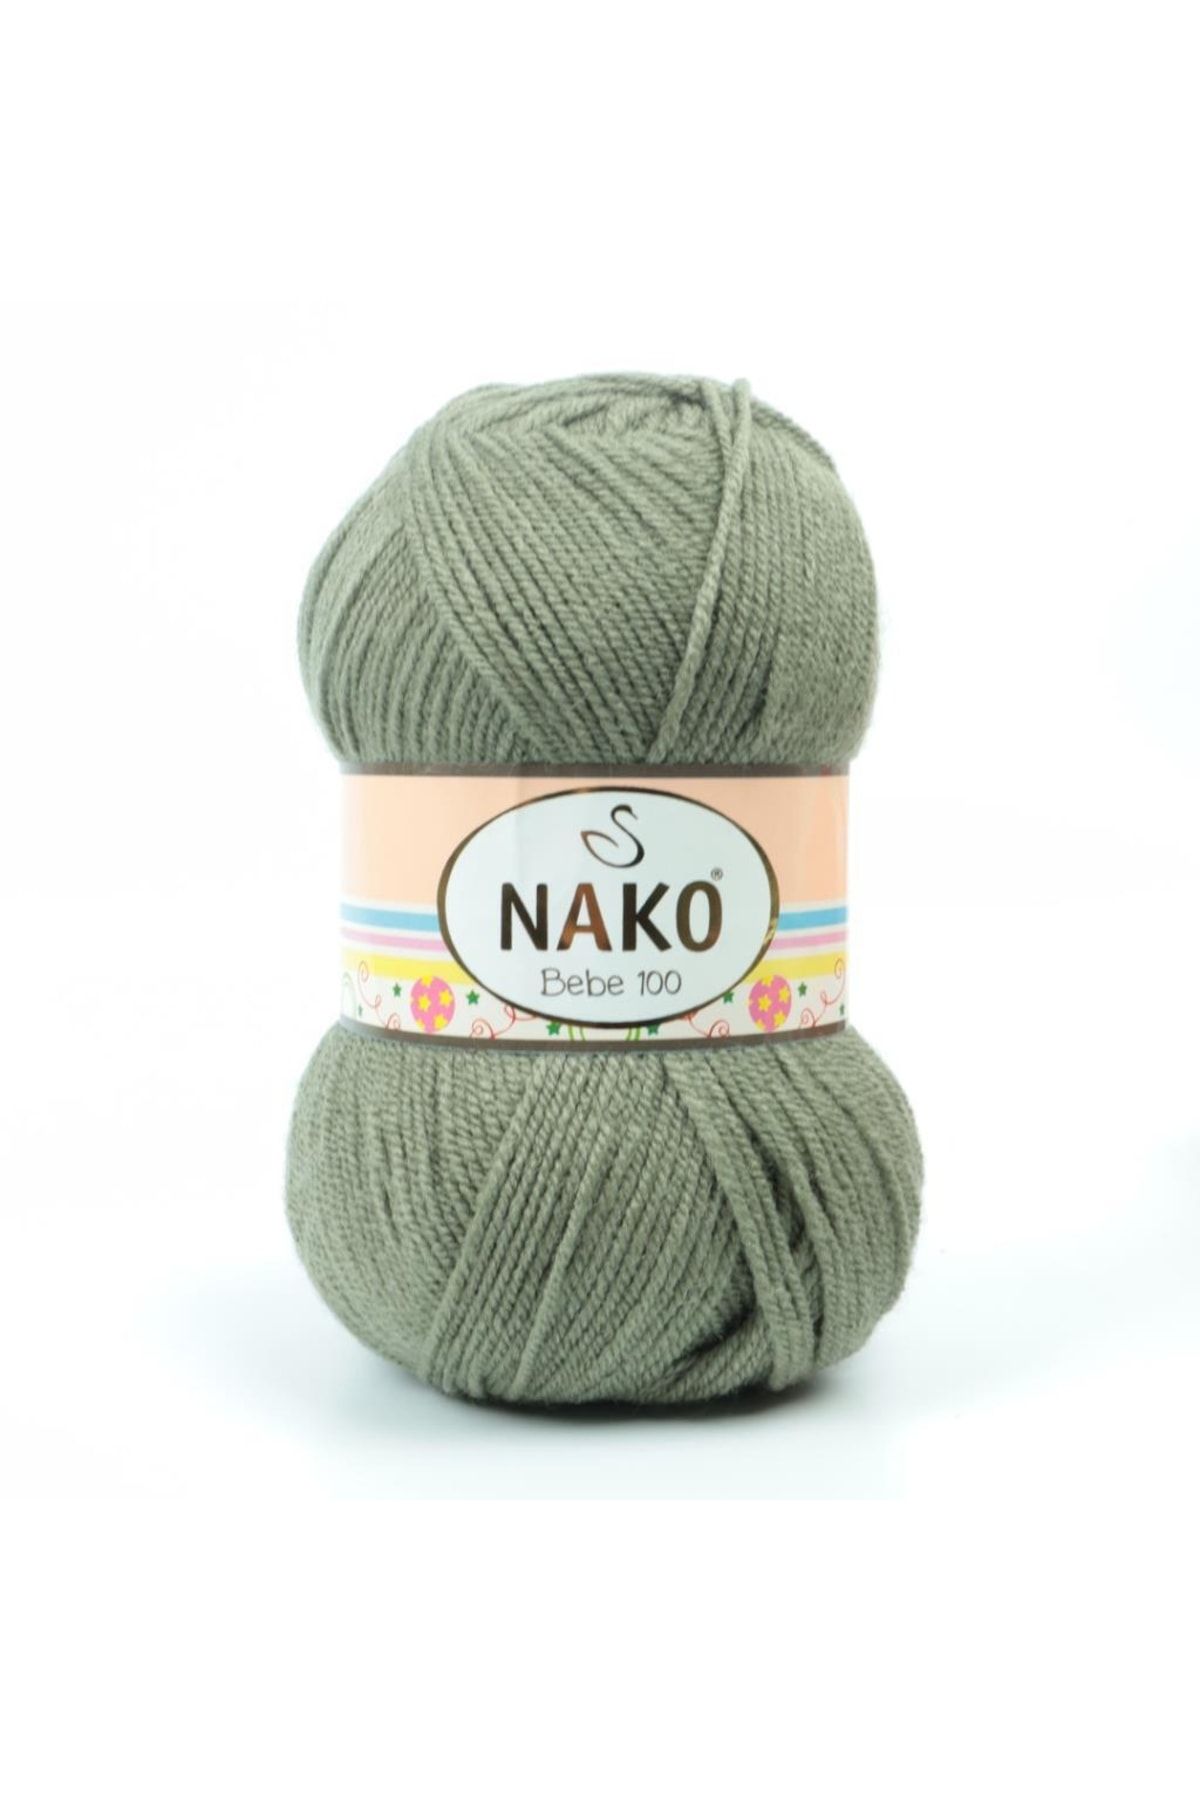 Nako Nako Bebe 100-6833